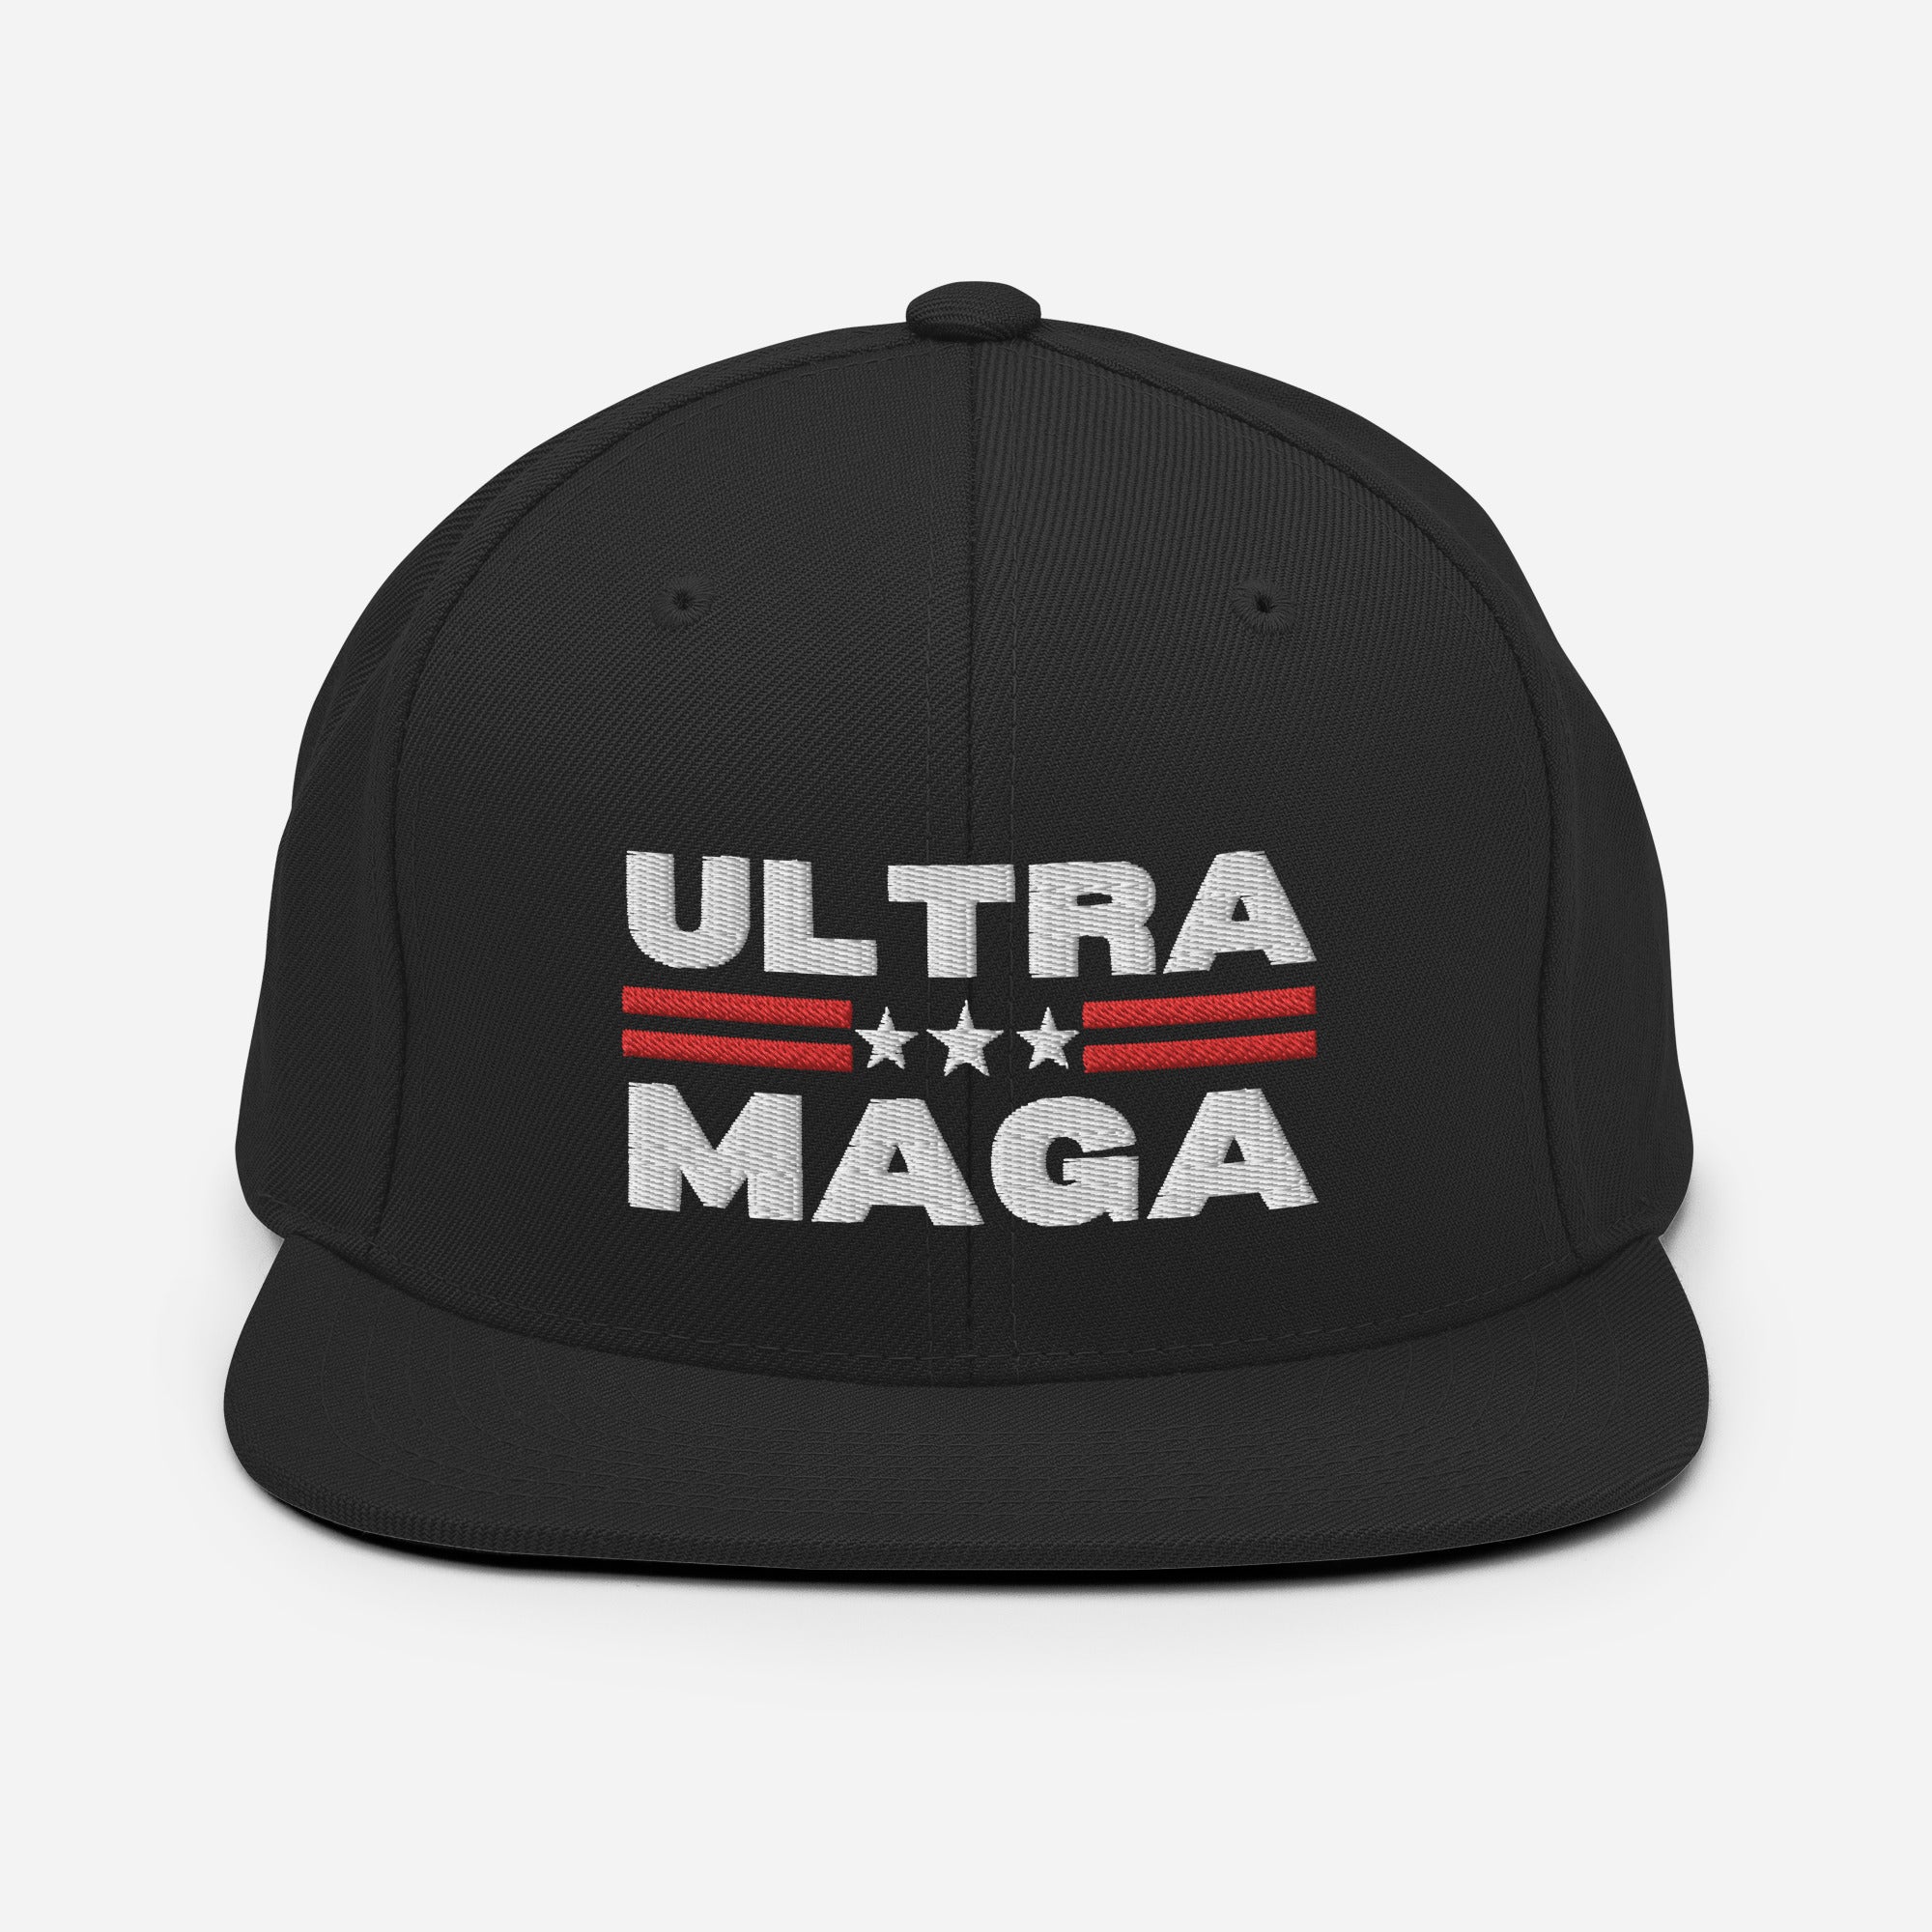 Ultra MAGA Hat, Trump 2024 Hat, Republican Dad Gifts, American Patriot Cap, Donald Trump 2024, Conservative Hats, FJB Snapback Hat